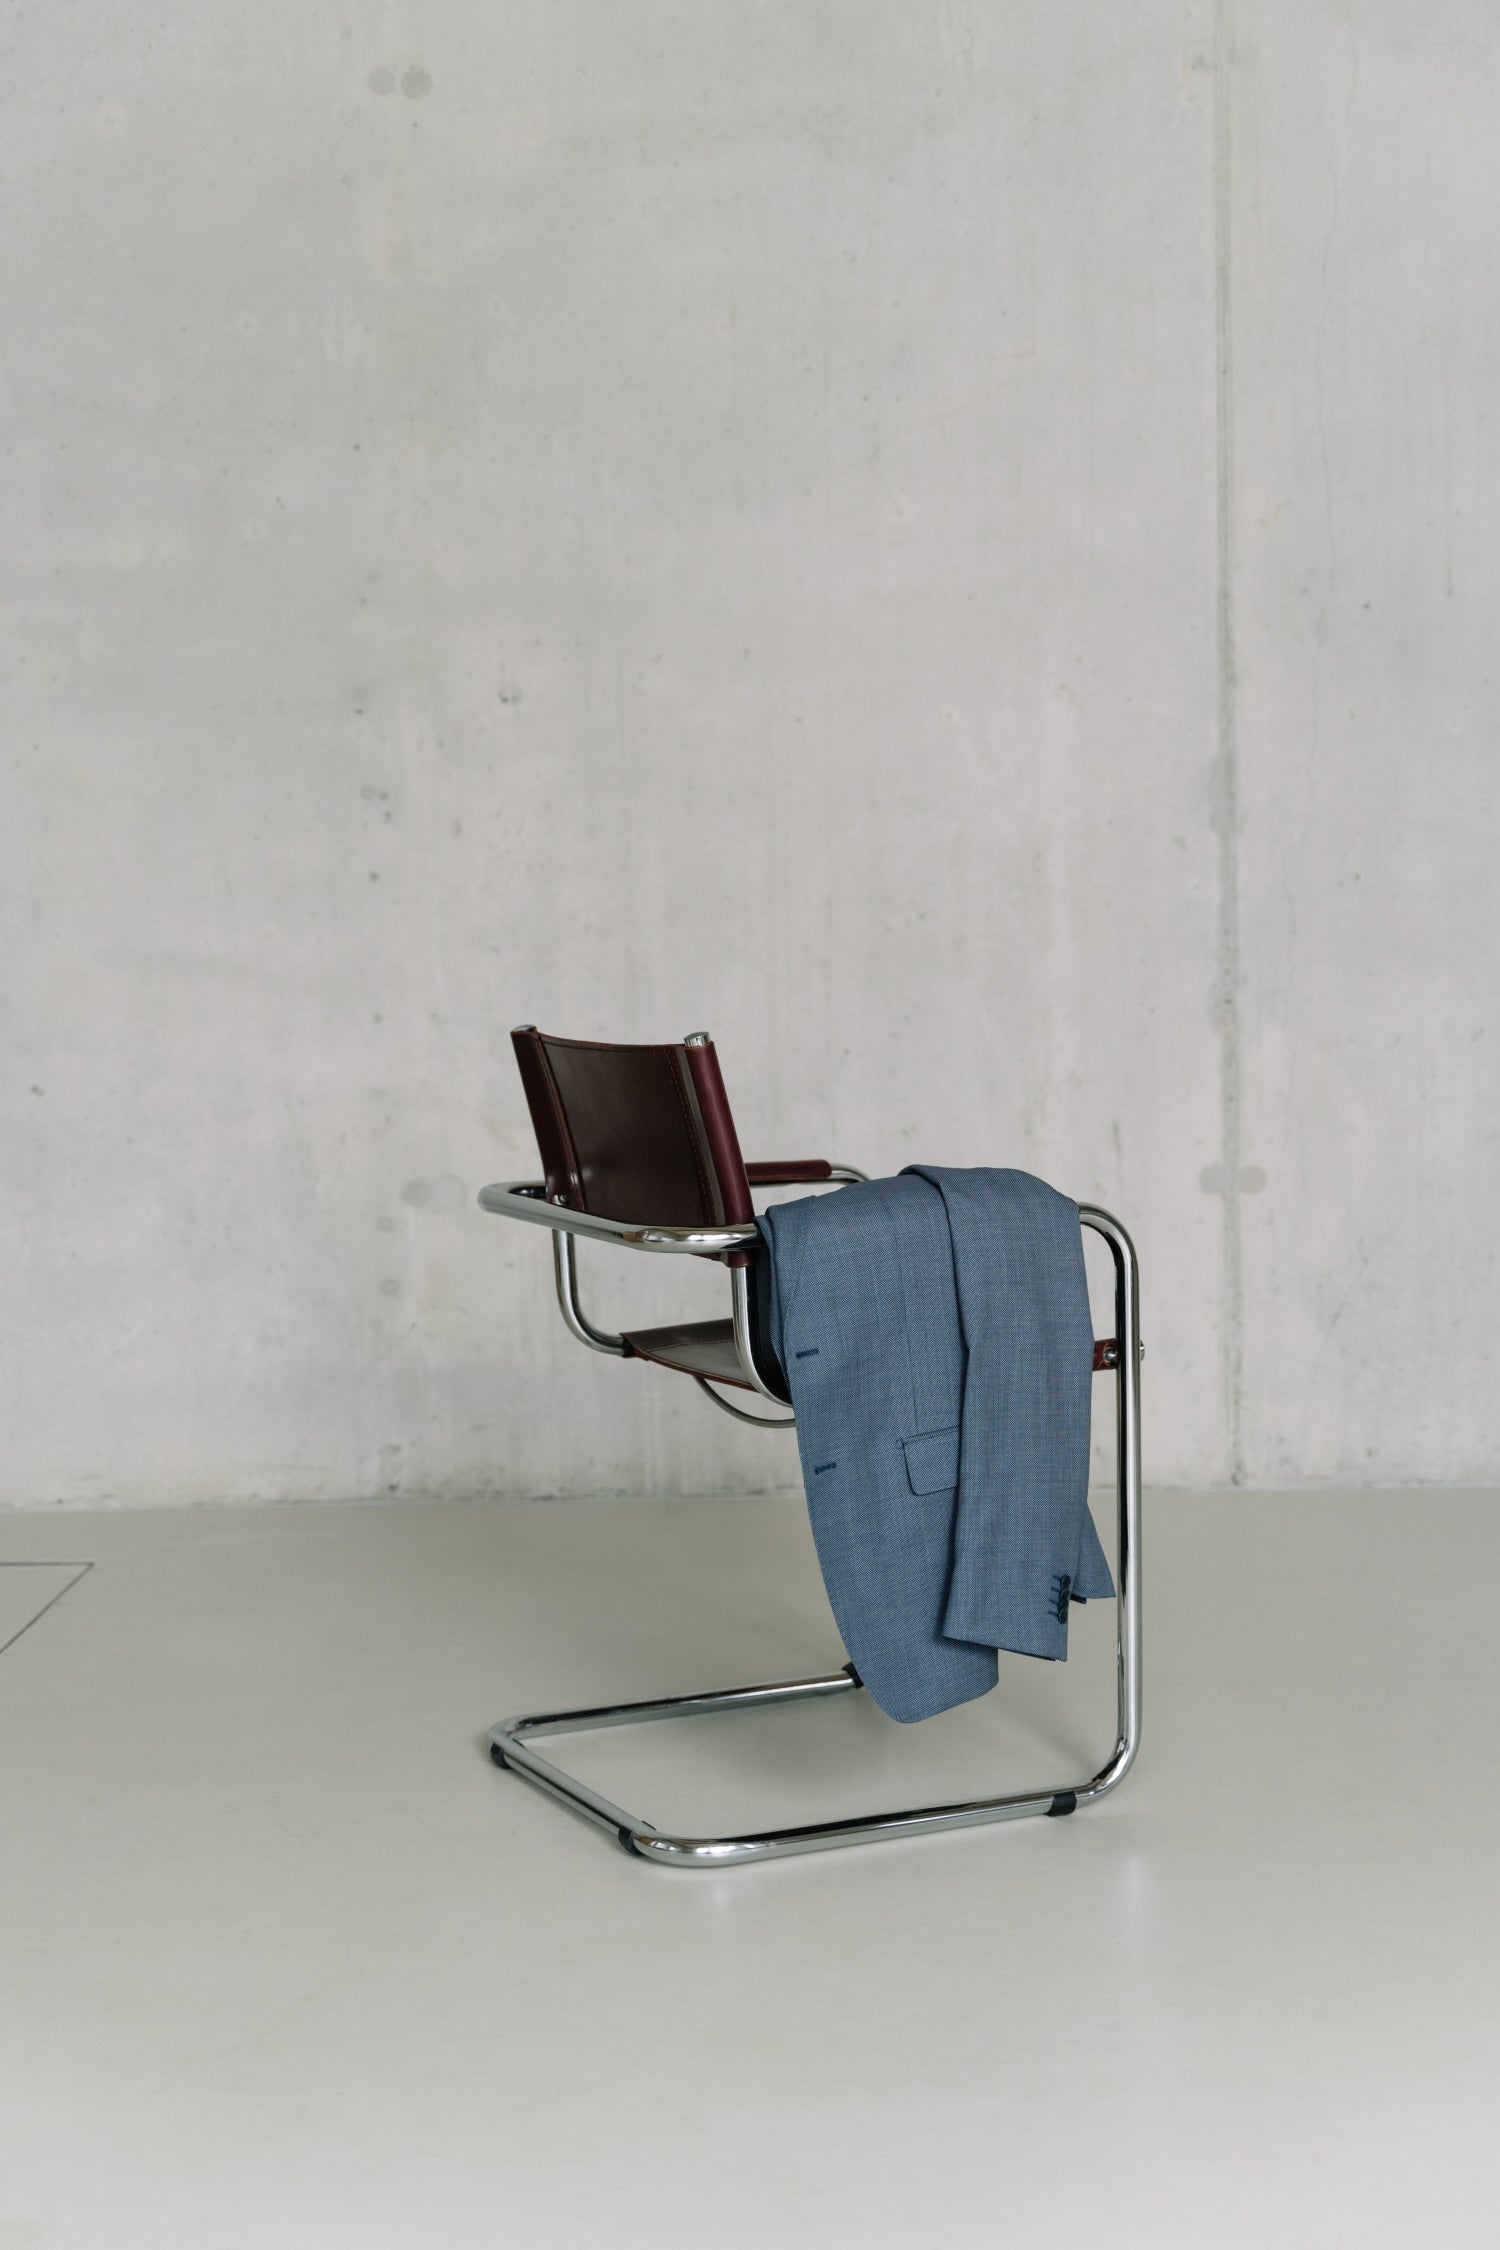 Blauw colbert hangend over een bureaustoel - De WBshopmaker